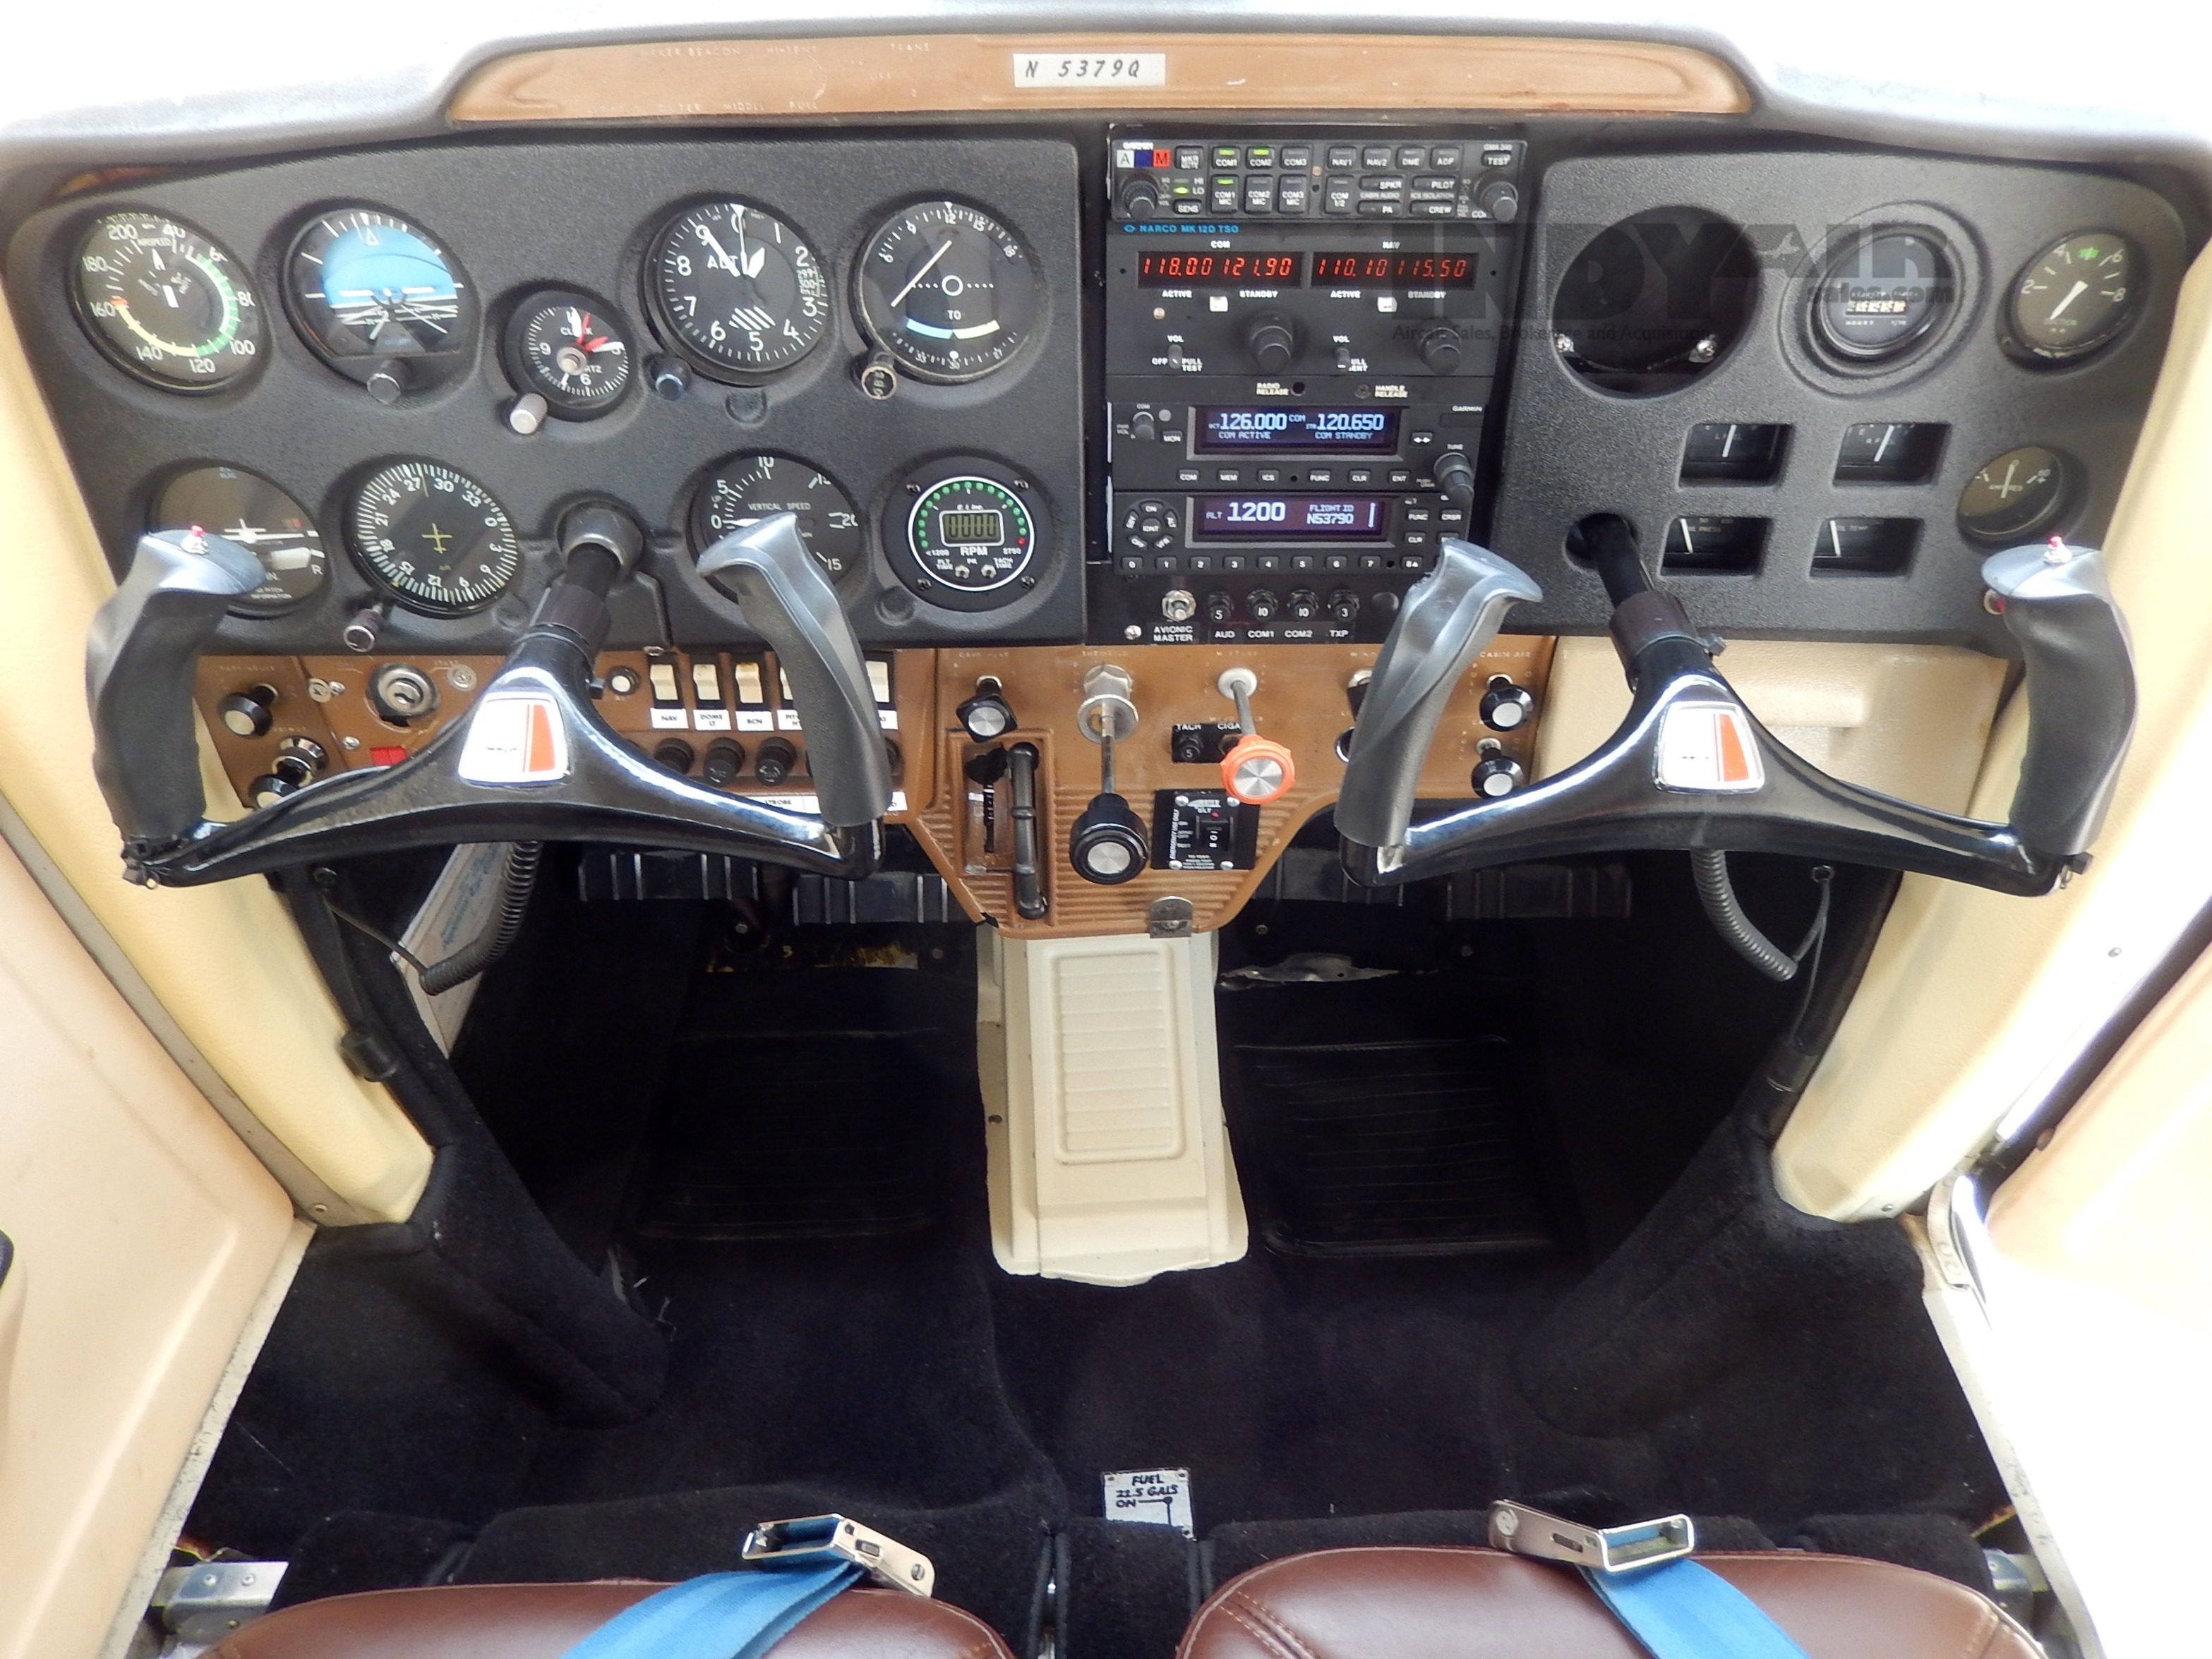 1972 Cessna 150L - N5379Q